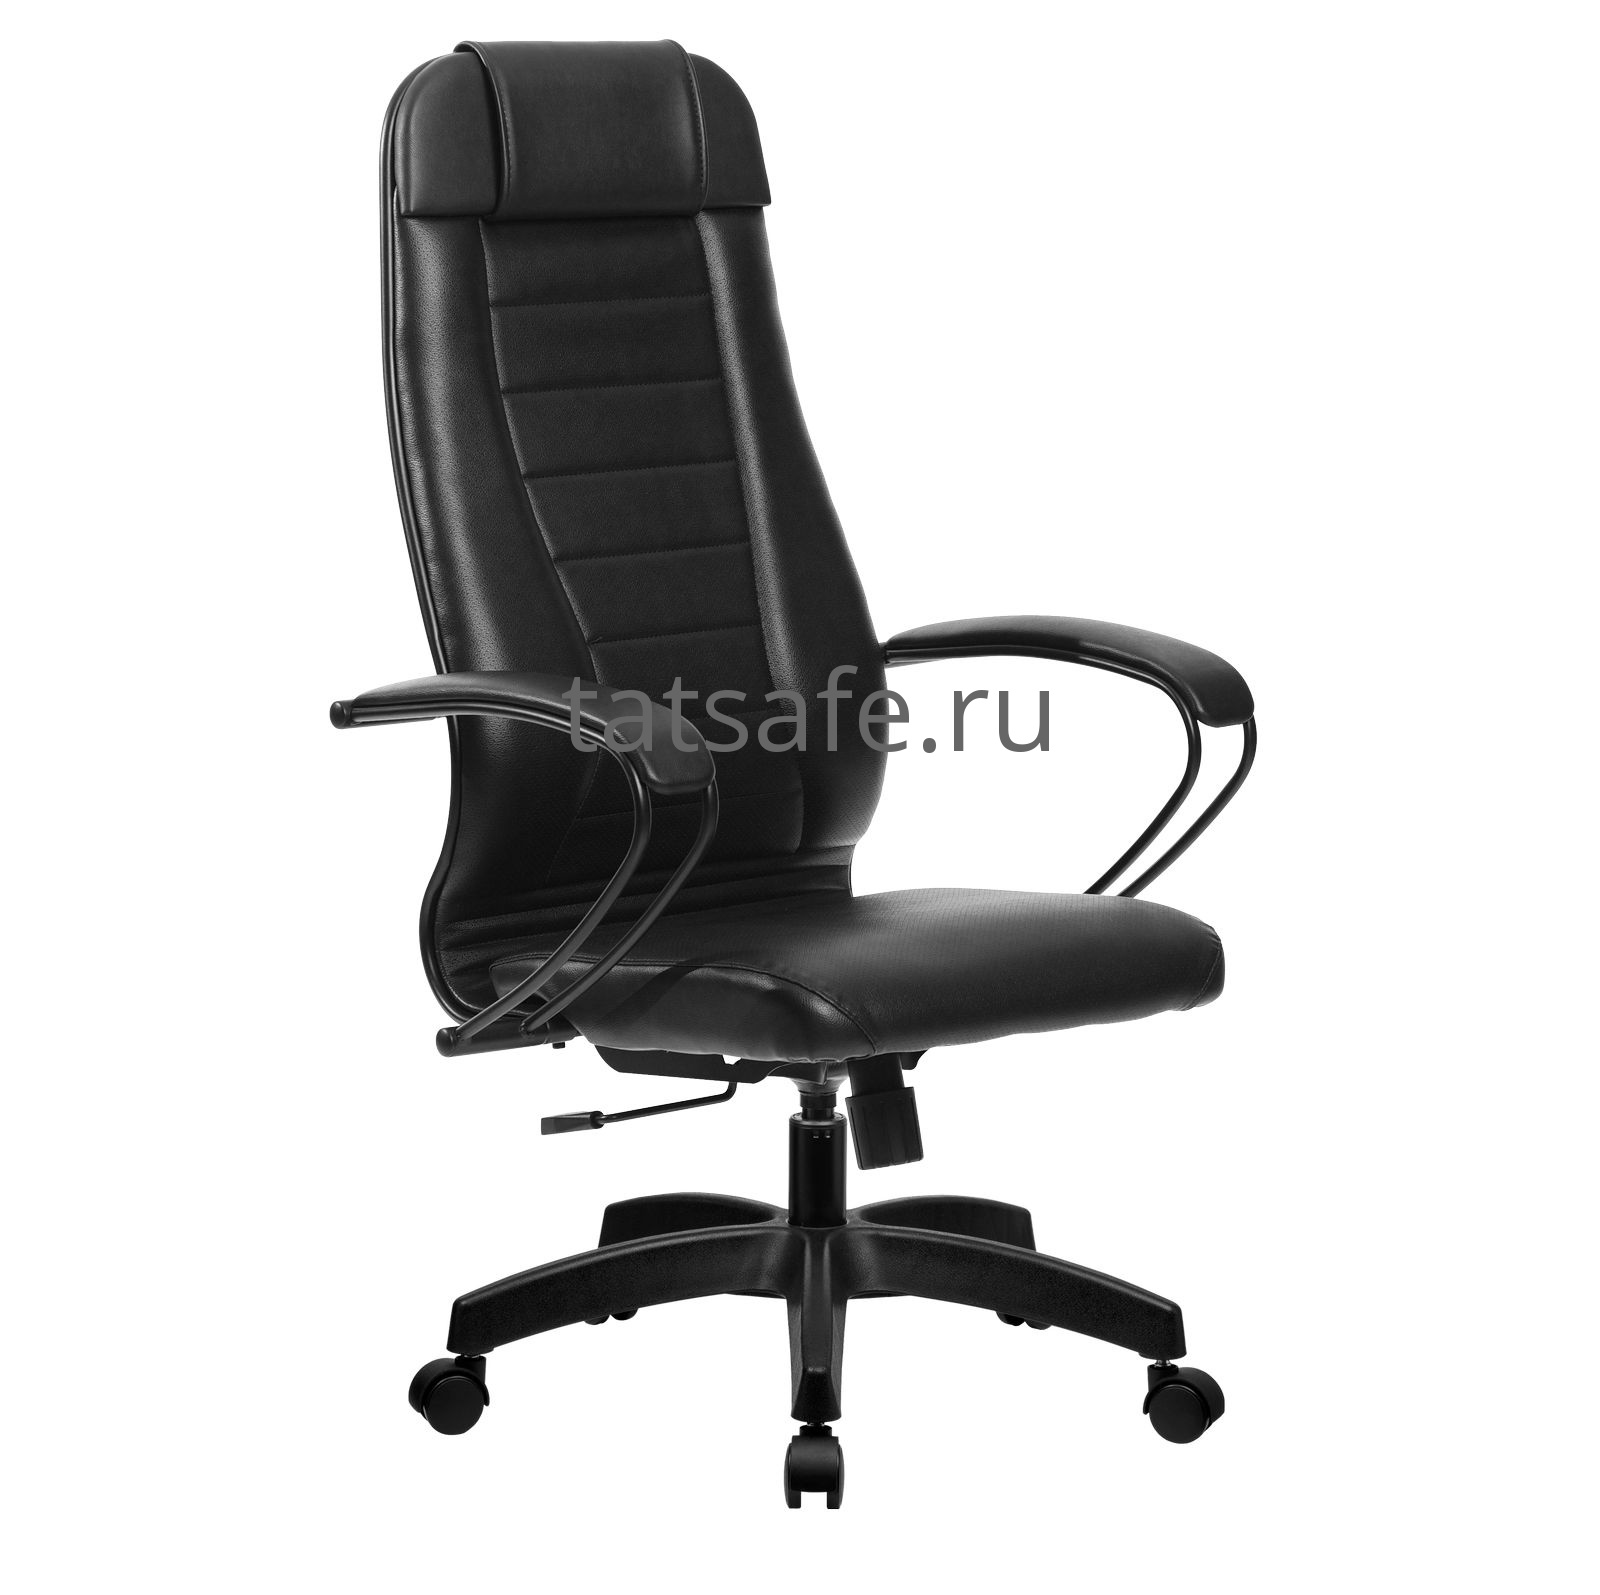 Кресло руководителя Метта комплект 30 PL | Защита-Офис - интернет-магазин сейфов, кресел, металлической 